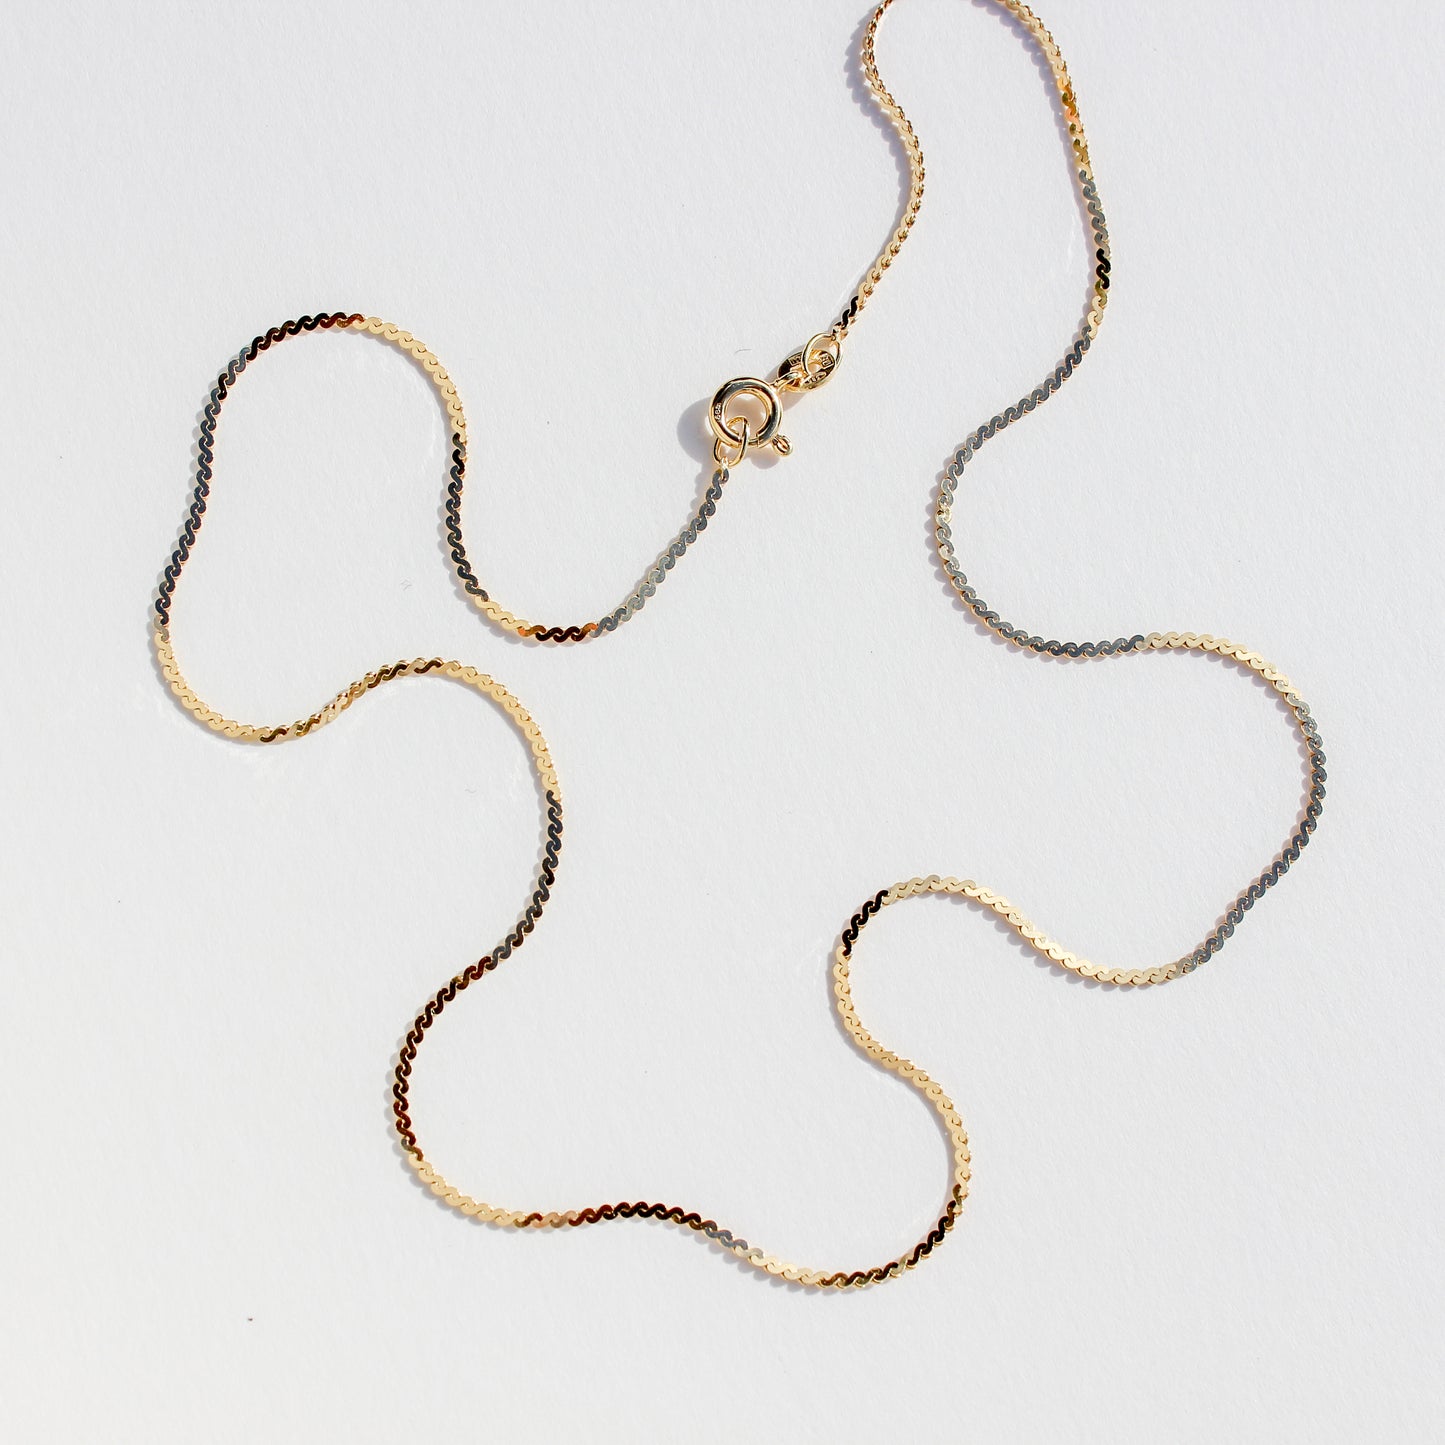 17.5 inch serpentine vtg 14kt gold chain